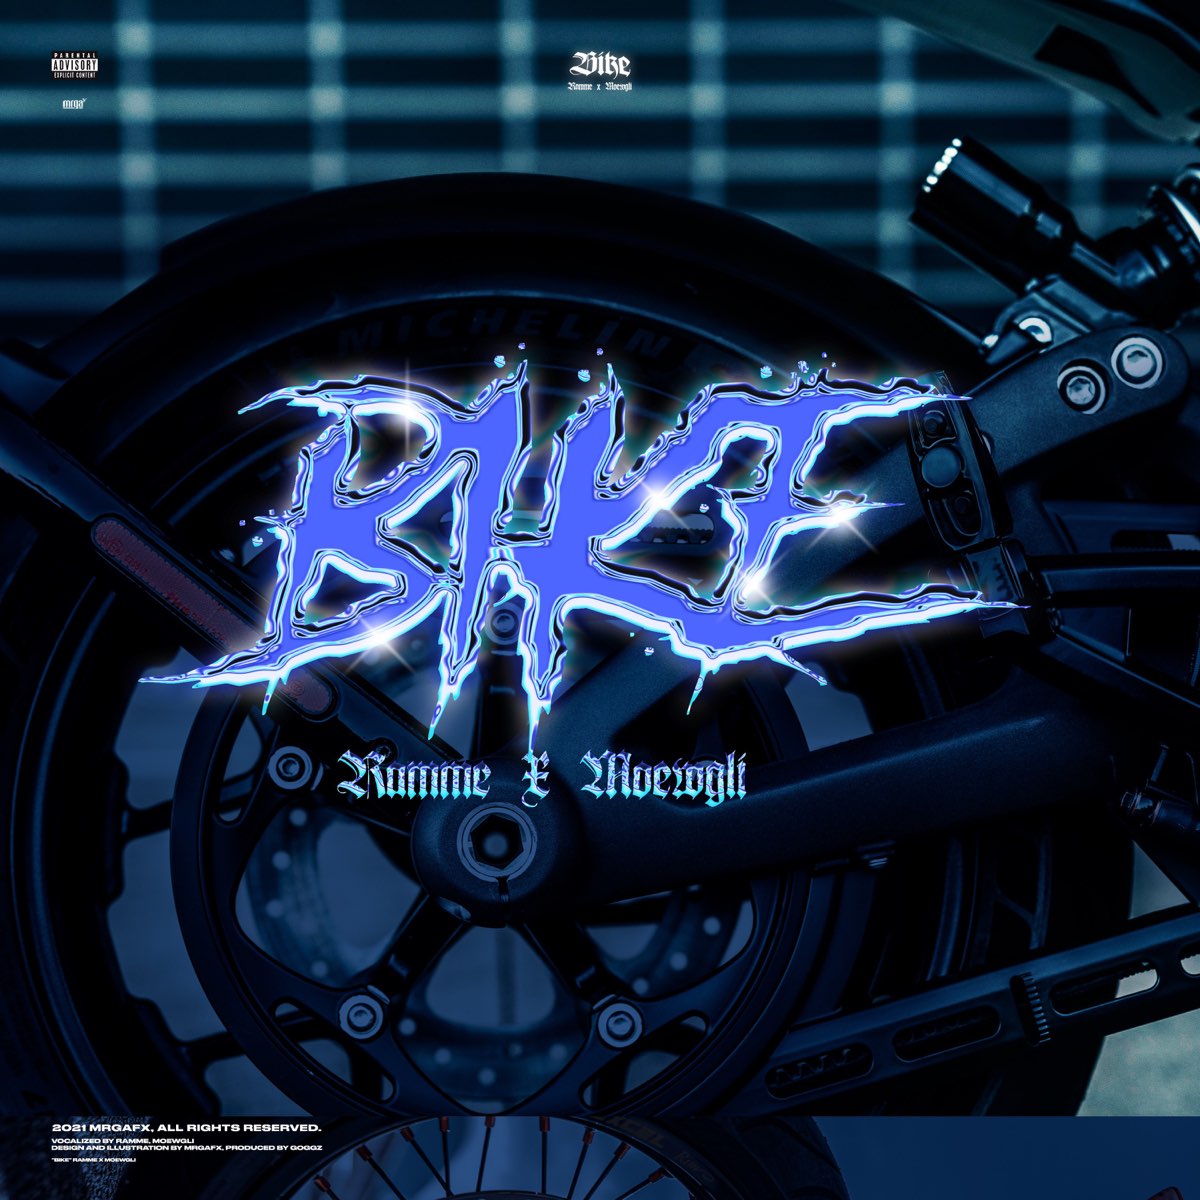 Ramme. Streamer on the Bike. Bike song